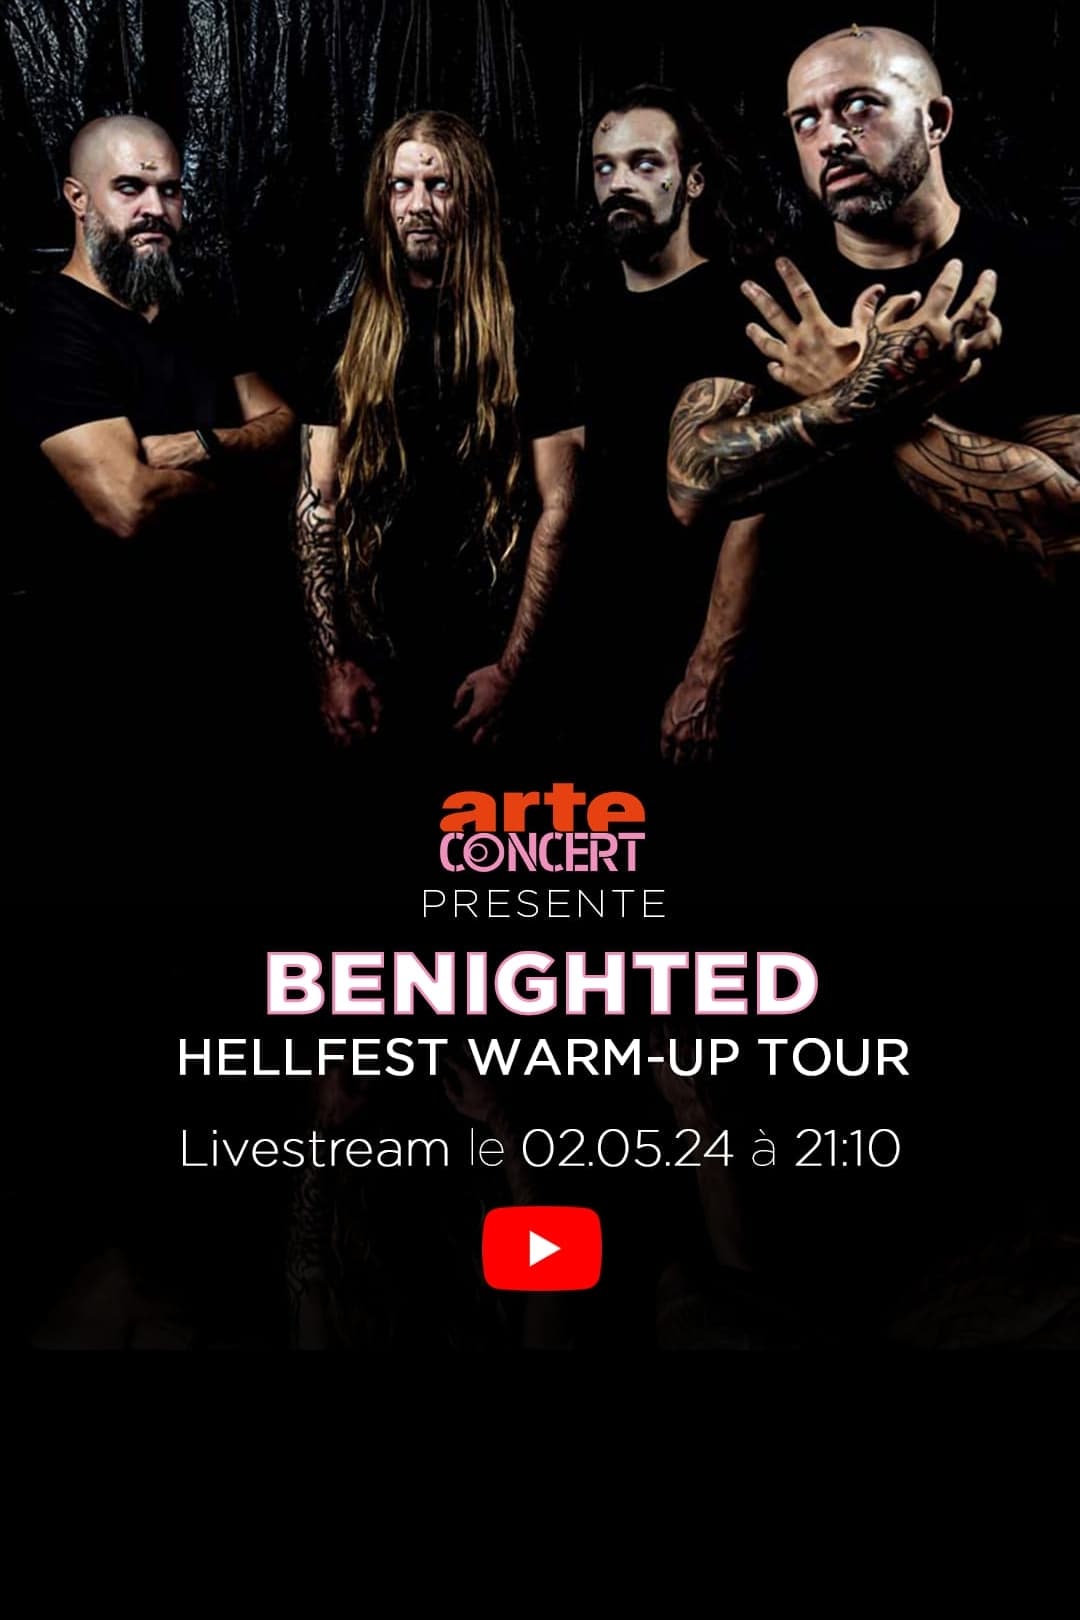 Benighted - Hellfest Warm-Up Tour à la Philharmonie de Paris